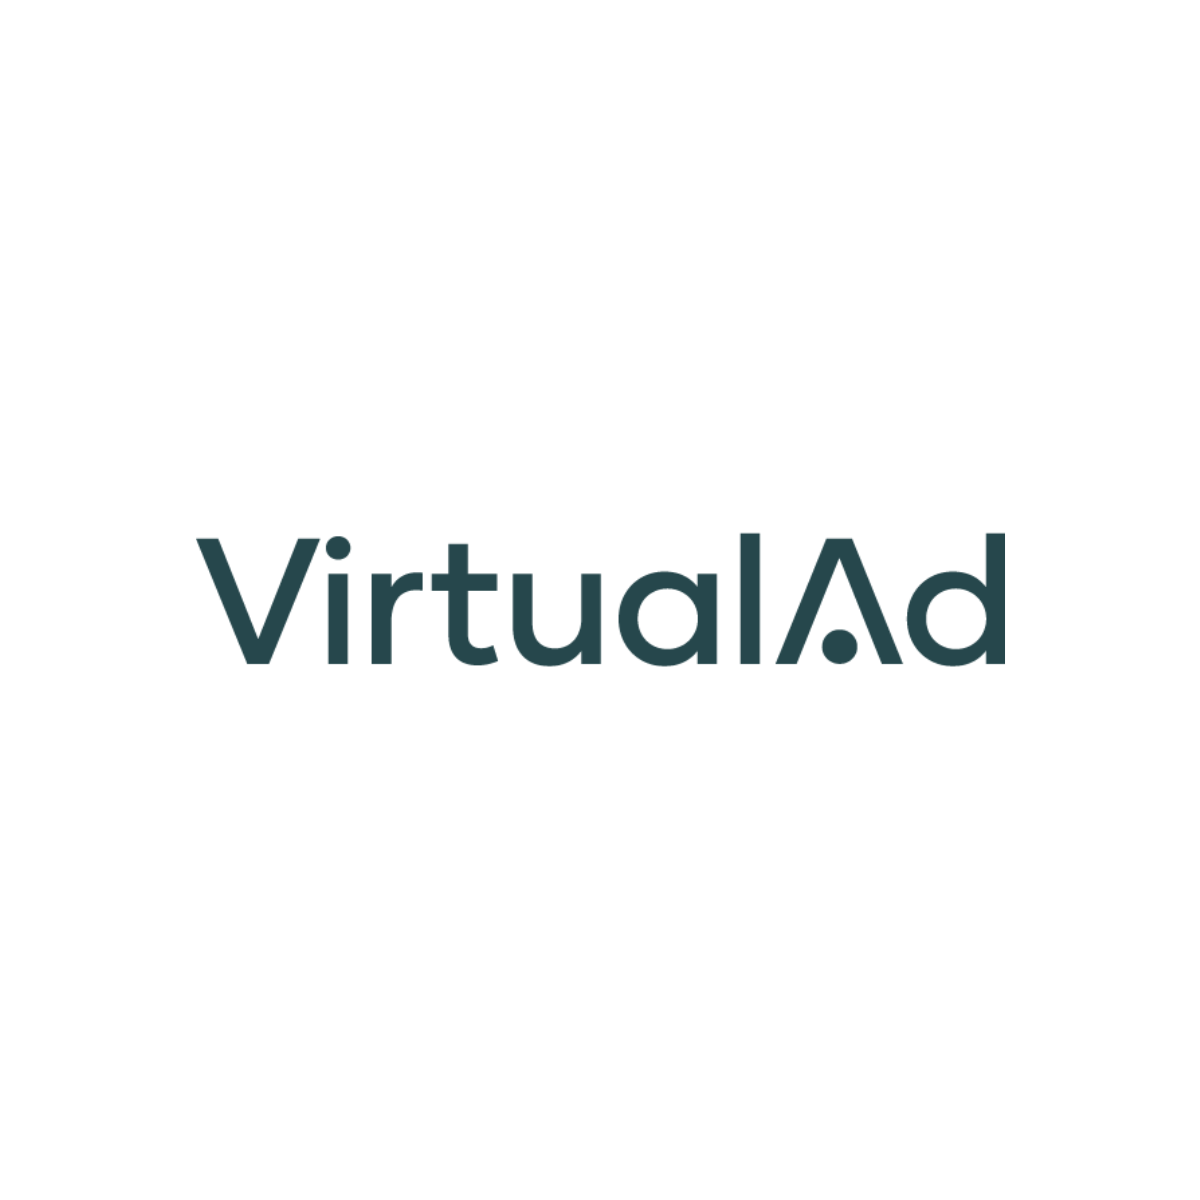 VirtualAd.png